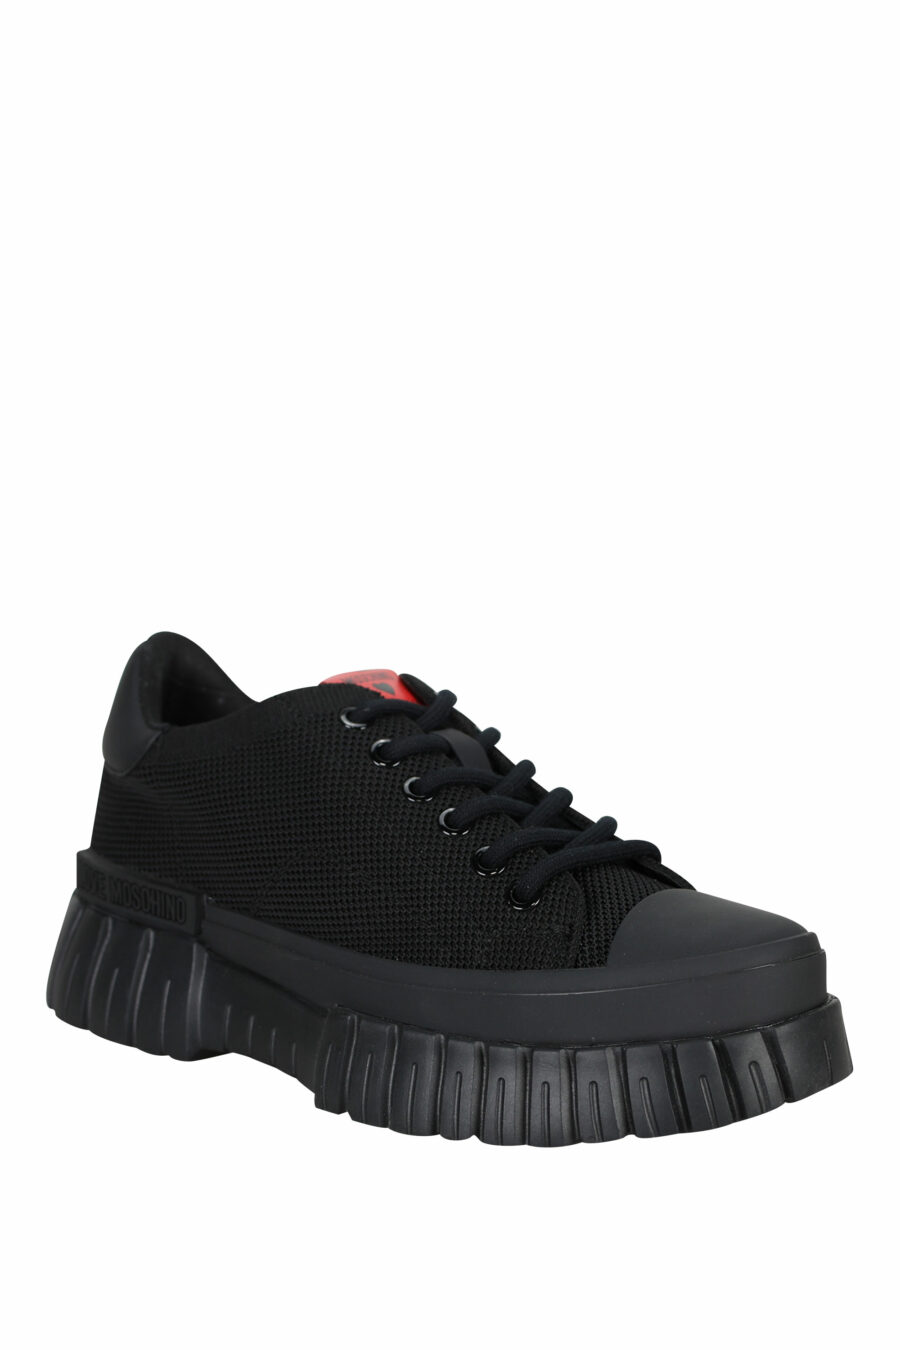 Zapatillas negras mix con logo - 8054653167971 1